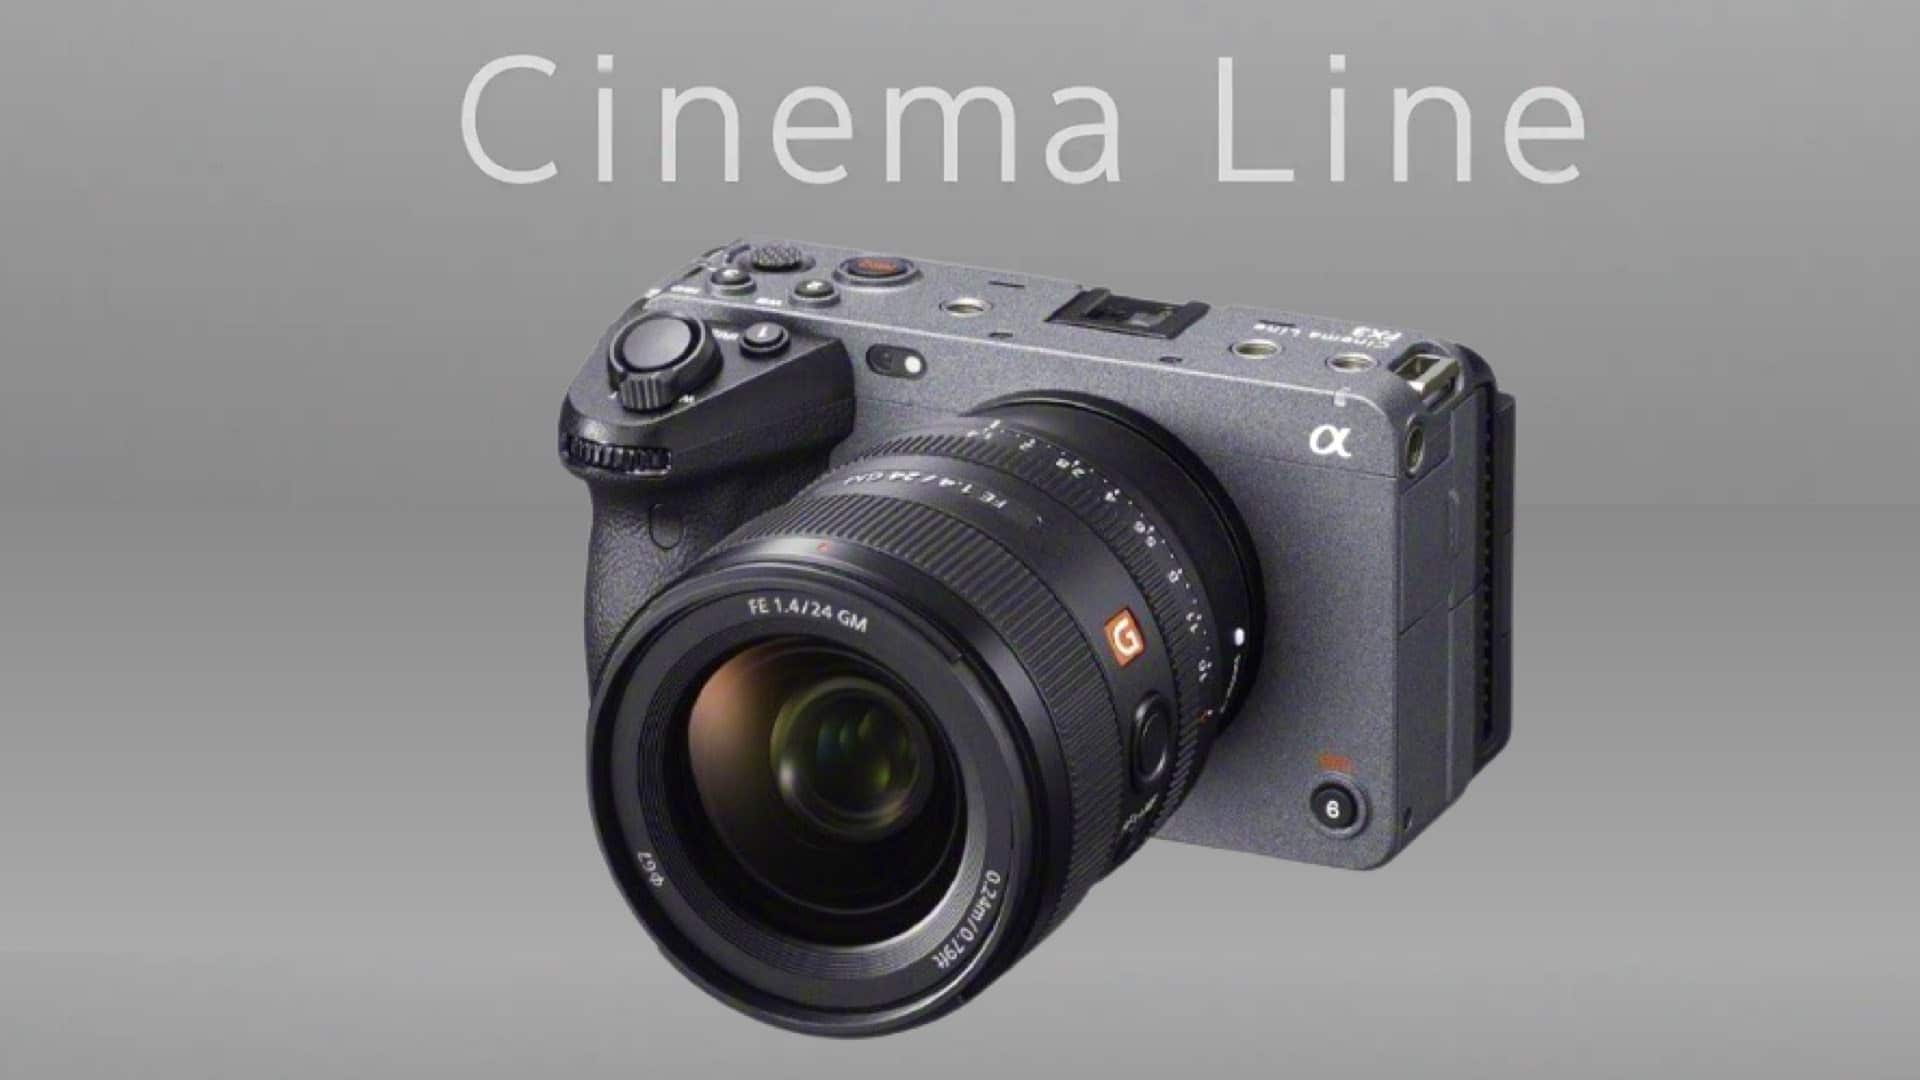 Sony hé lộ một chiếc máy quay cinema gọn nhẹ sẽ ra mắt vào 24/2